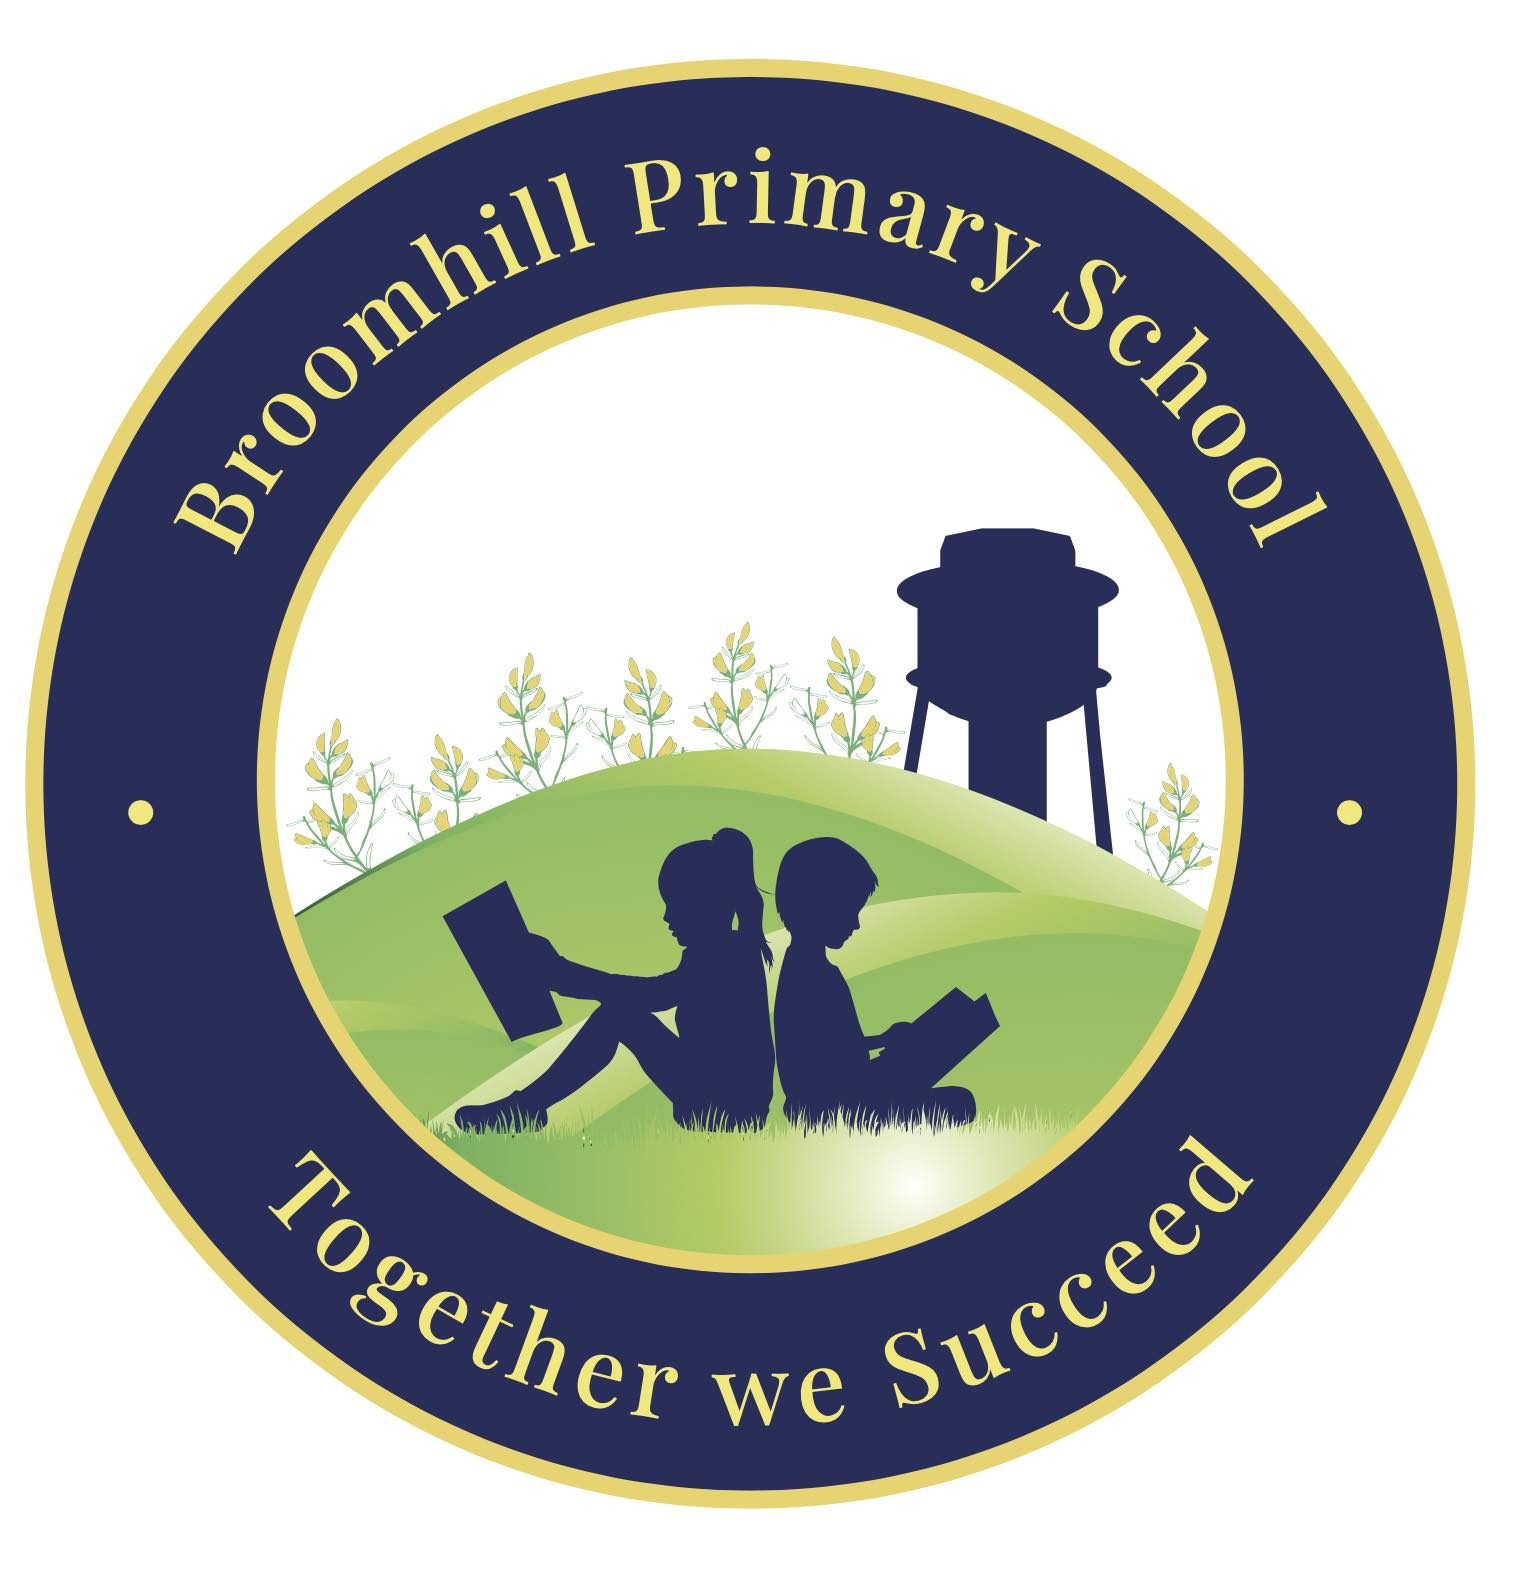 Broomhill Primary School School (LINK)